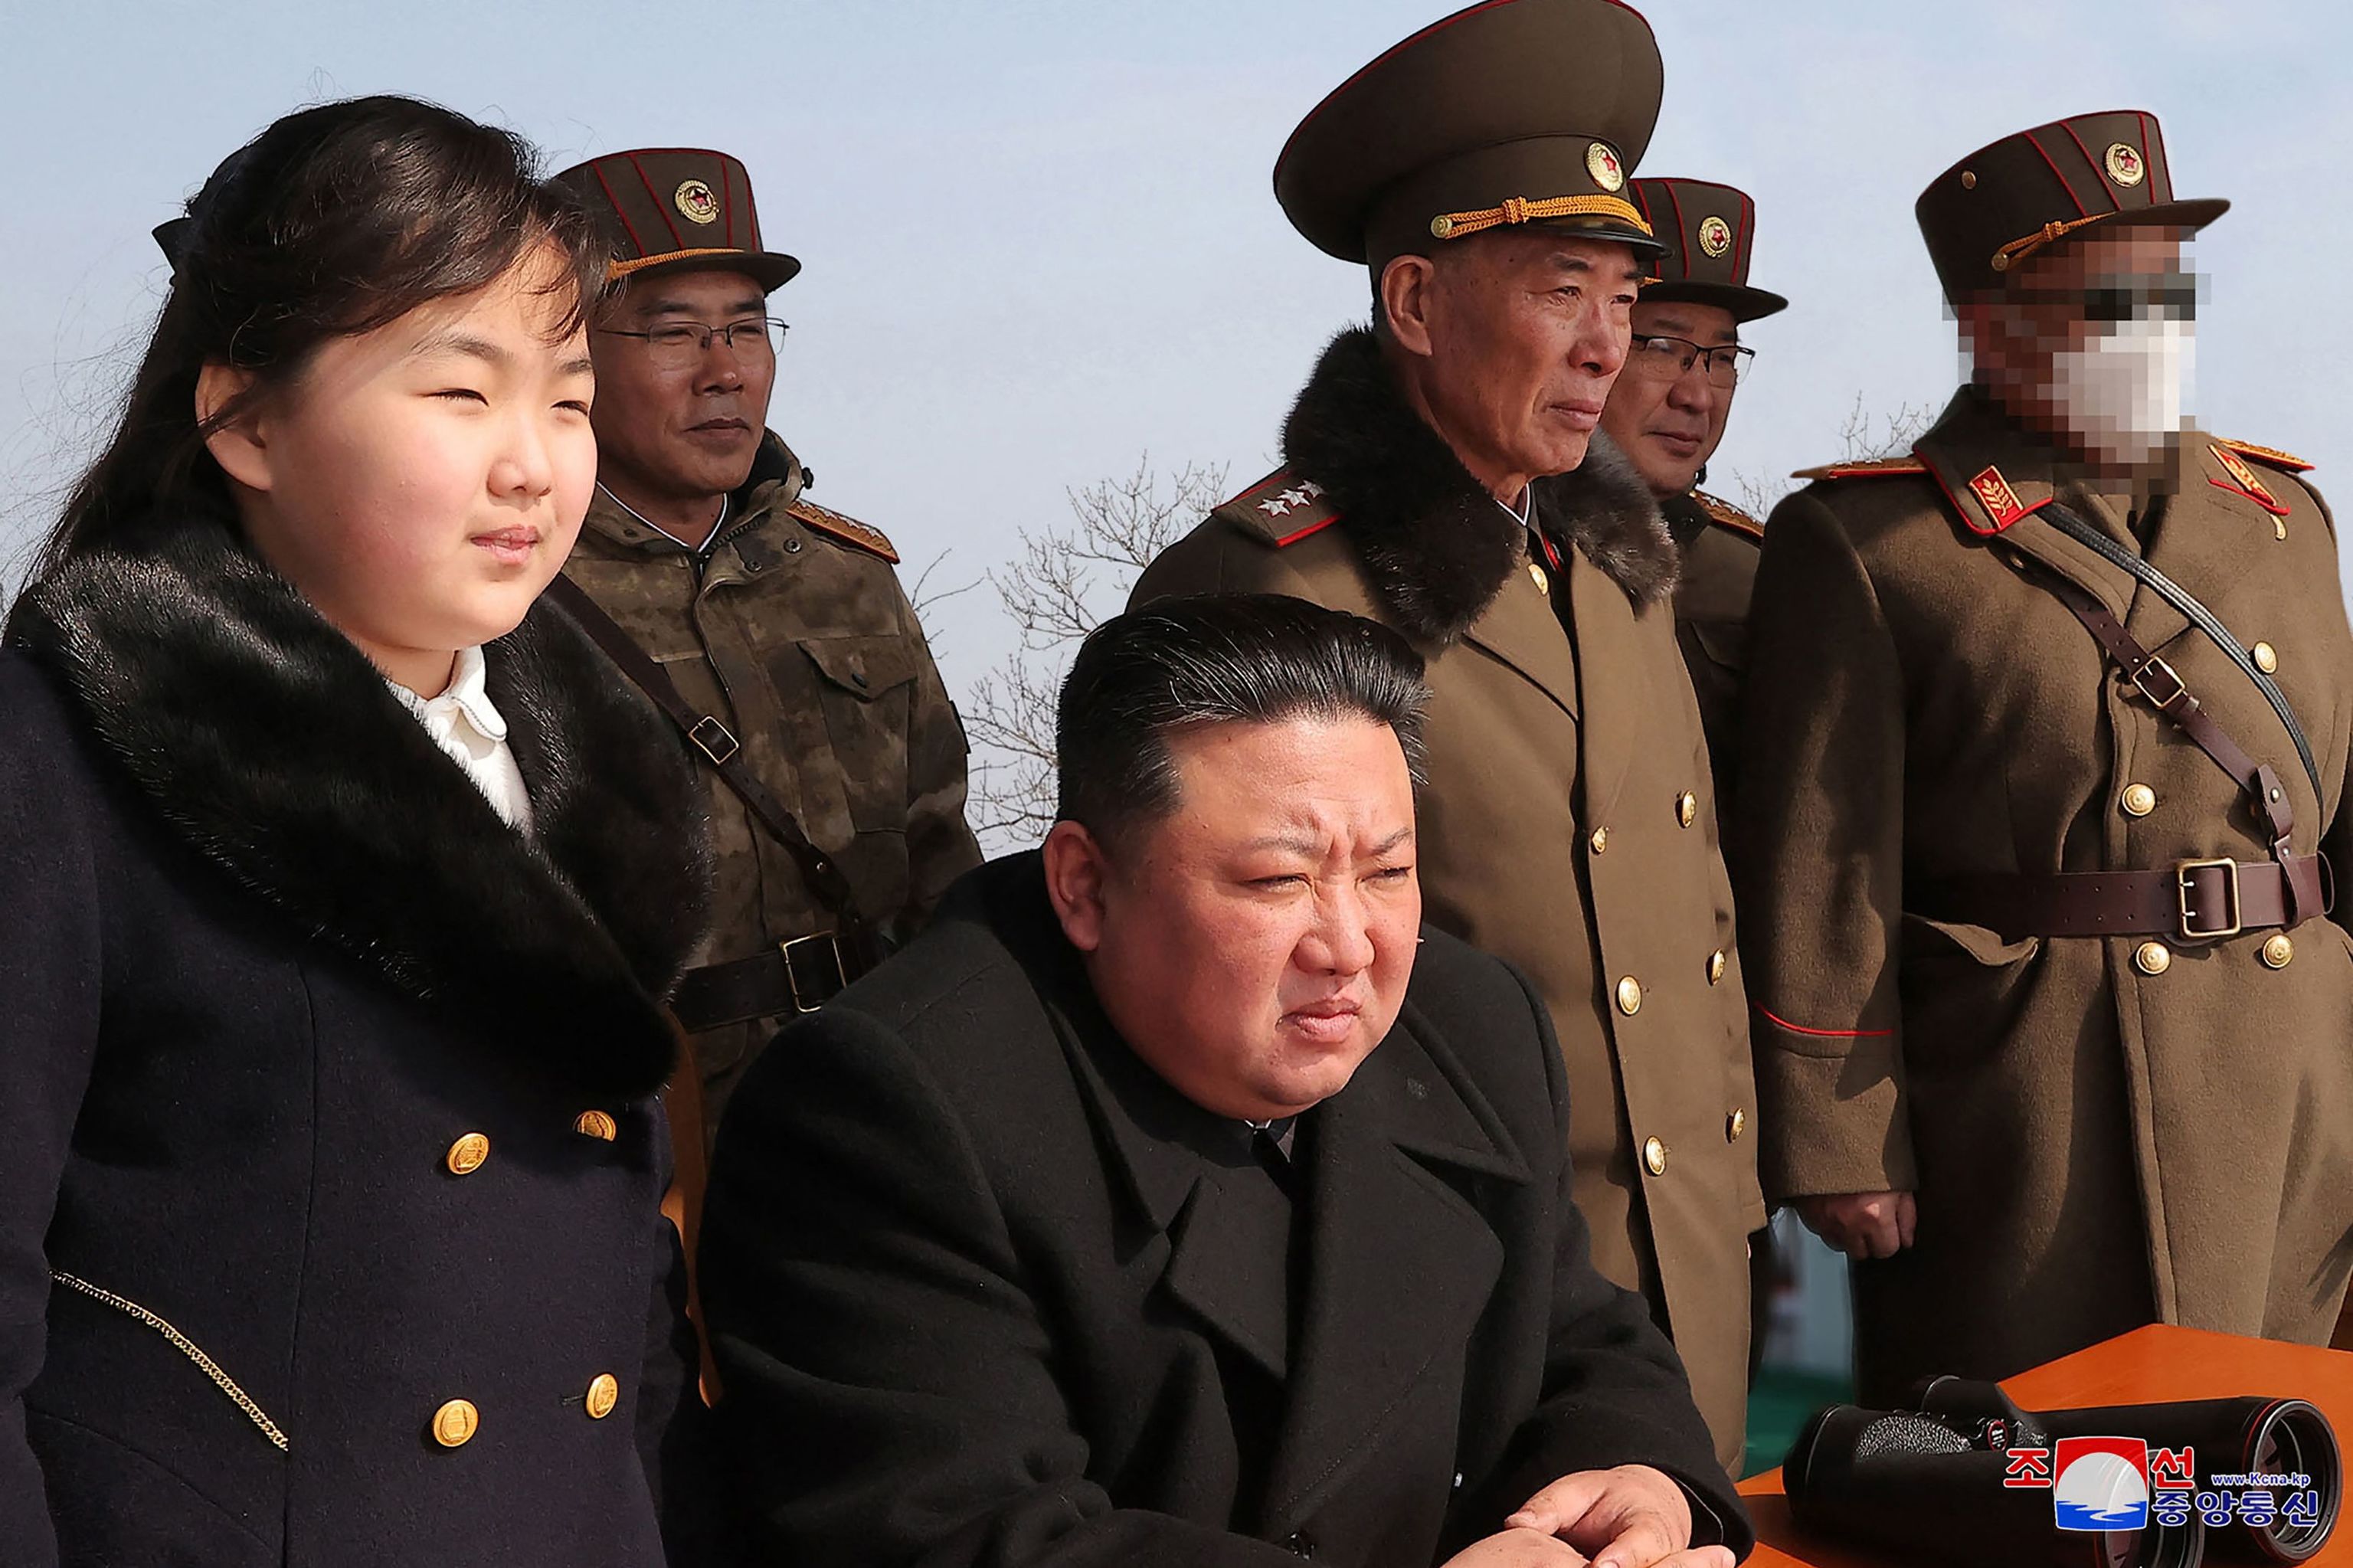 El líder norcoreano junto a su hija y varios líderes militares, en una imagen reciente.